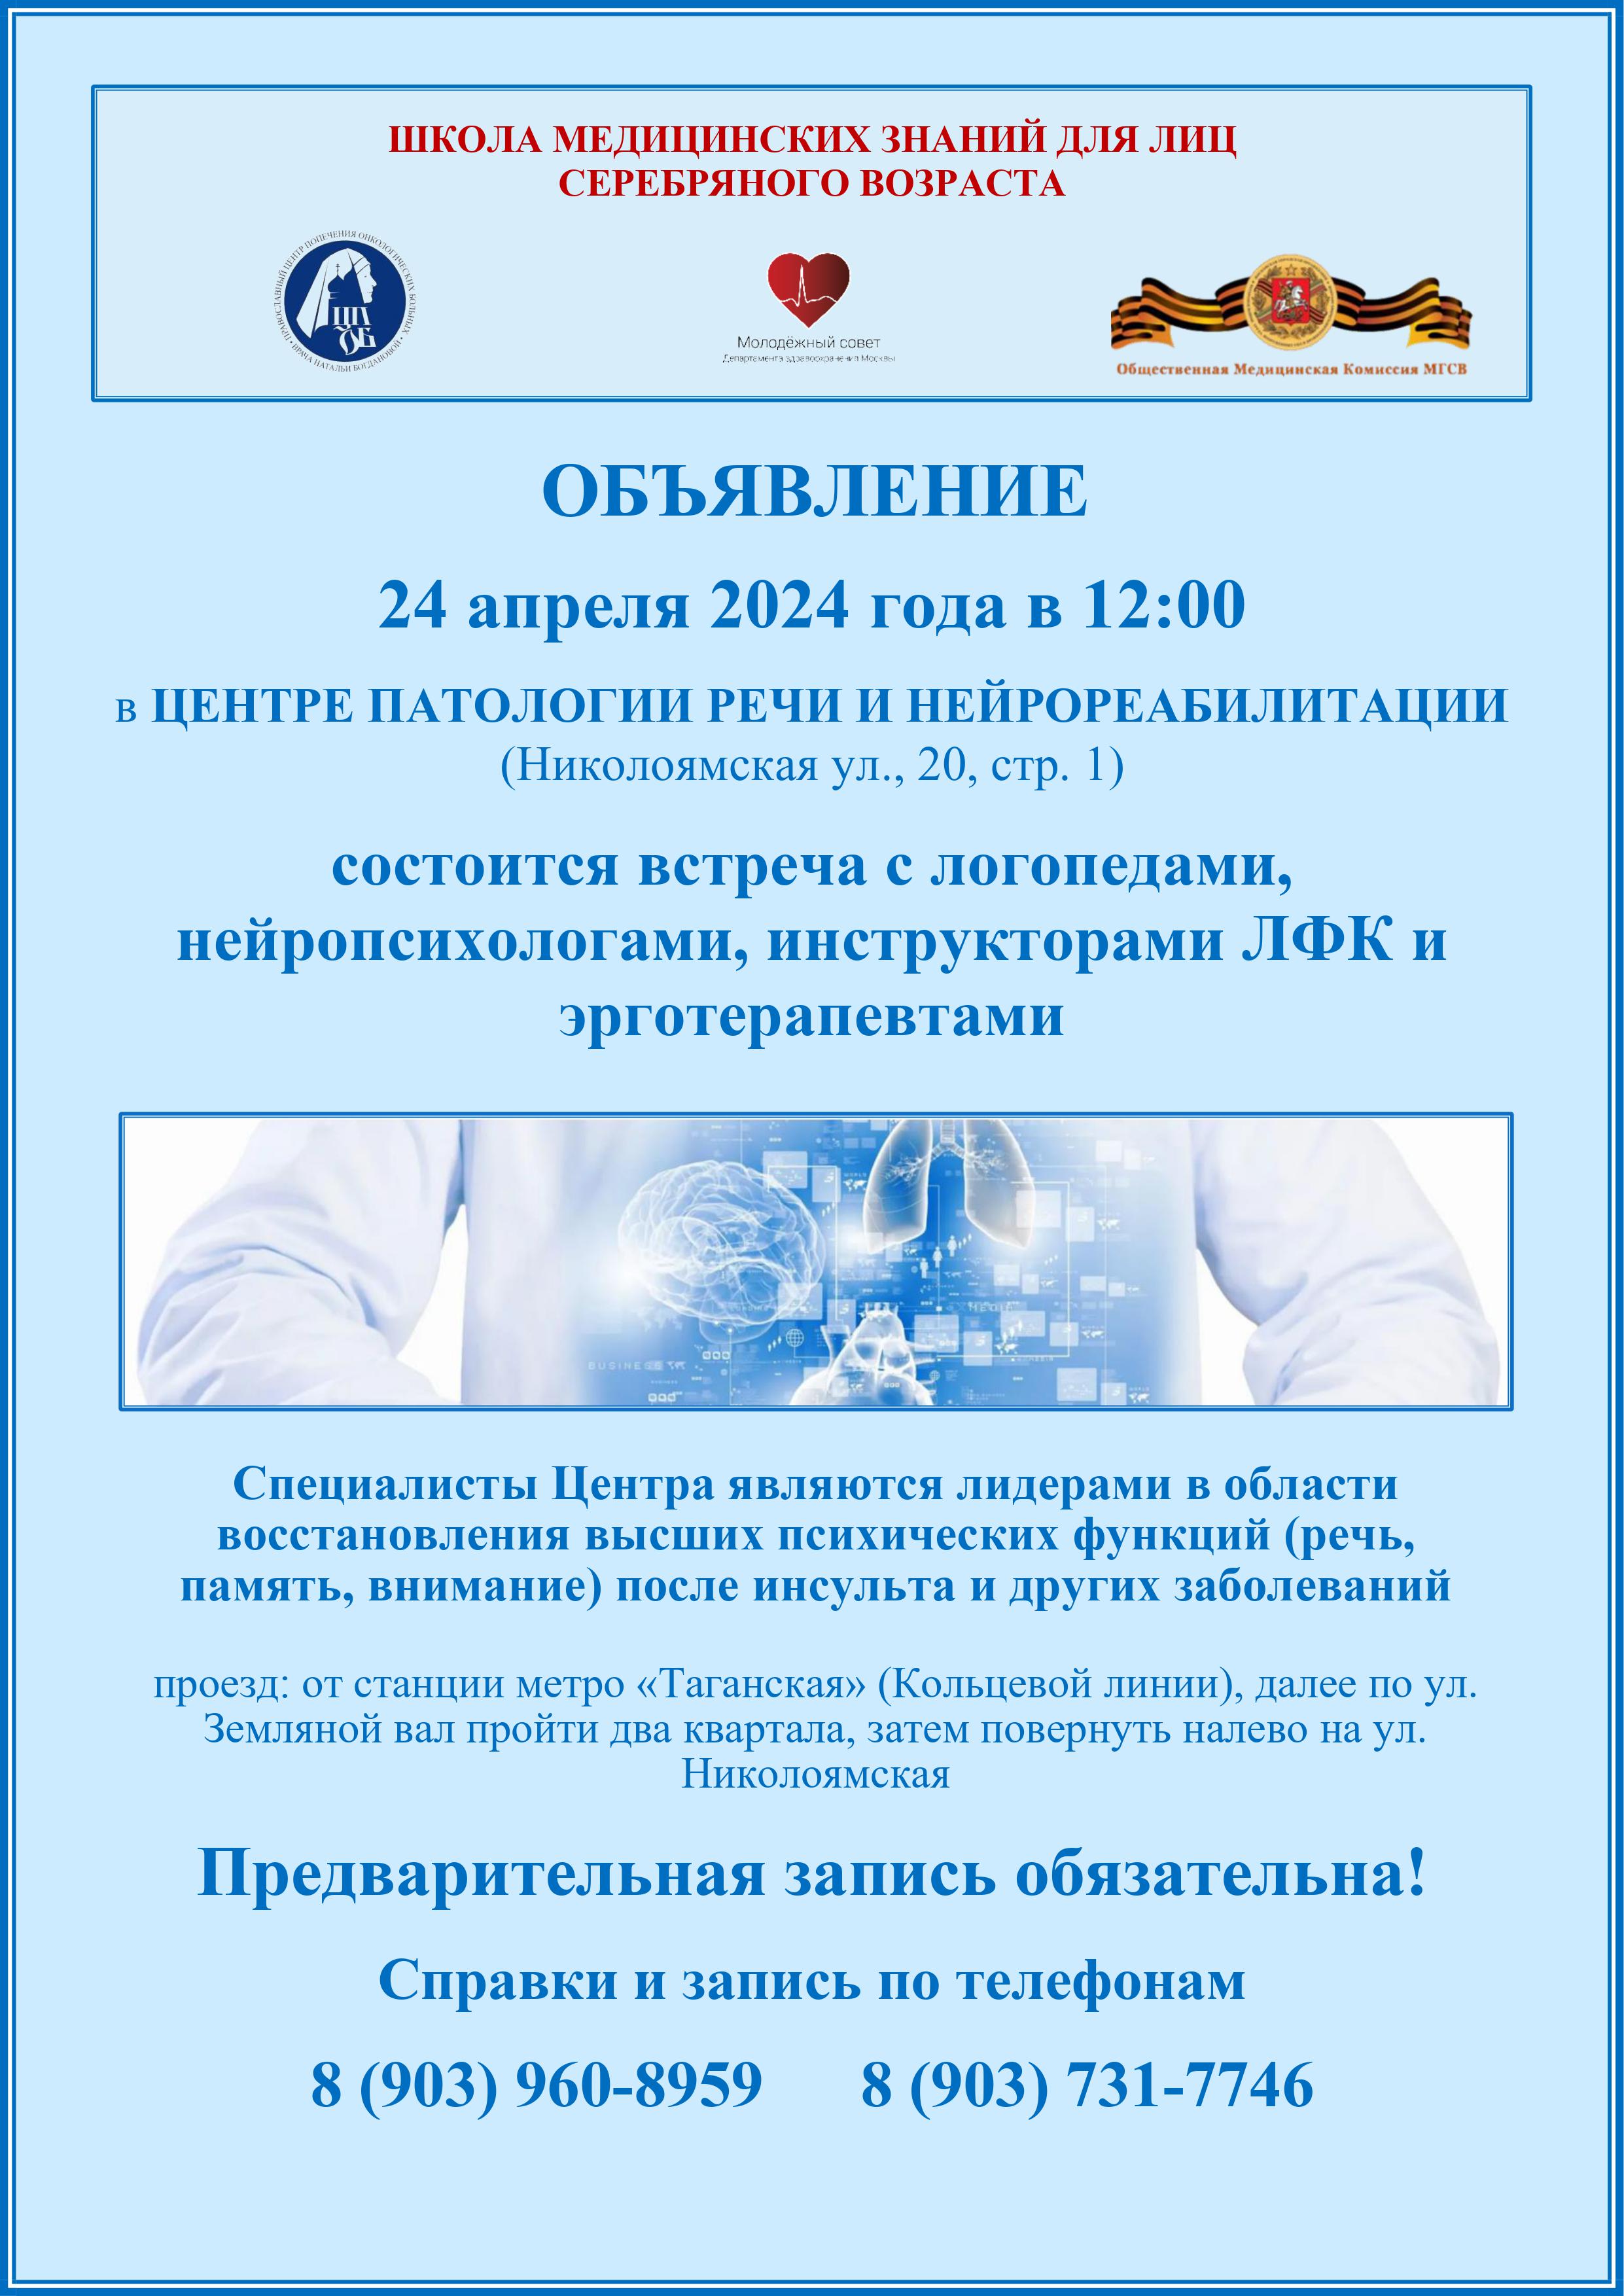 24 апреля 2024 года состоится встреча в Центре патологии речи и нейрореабилитации